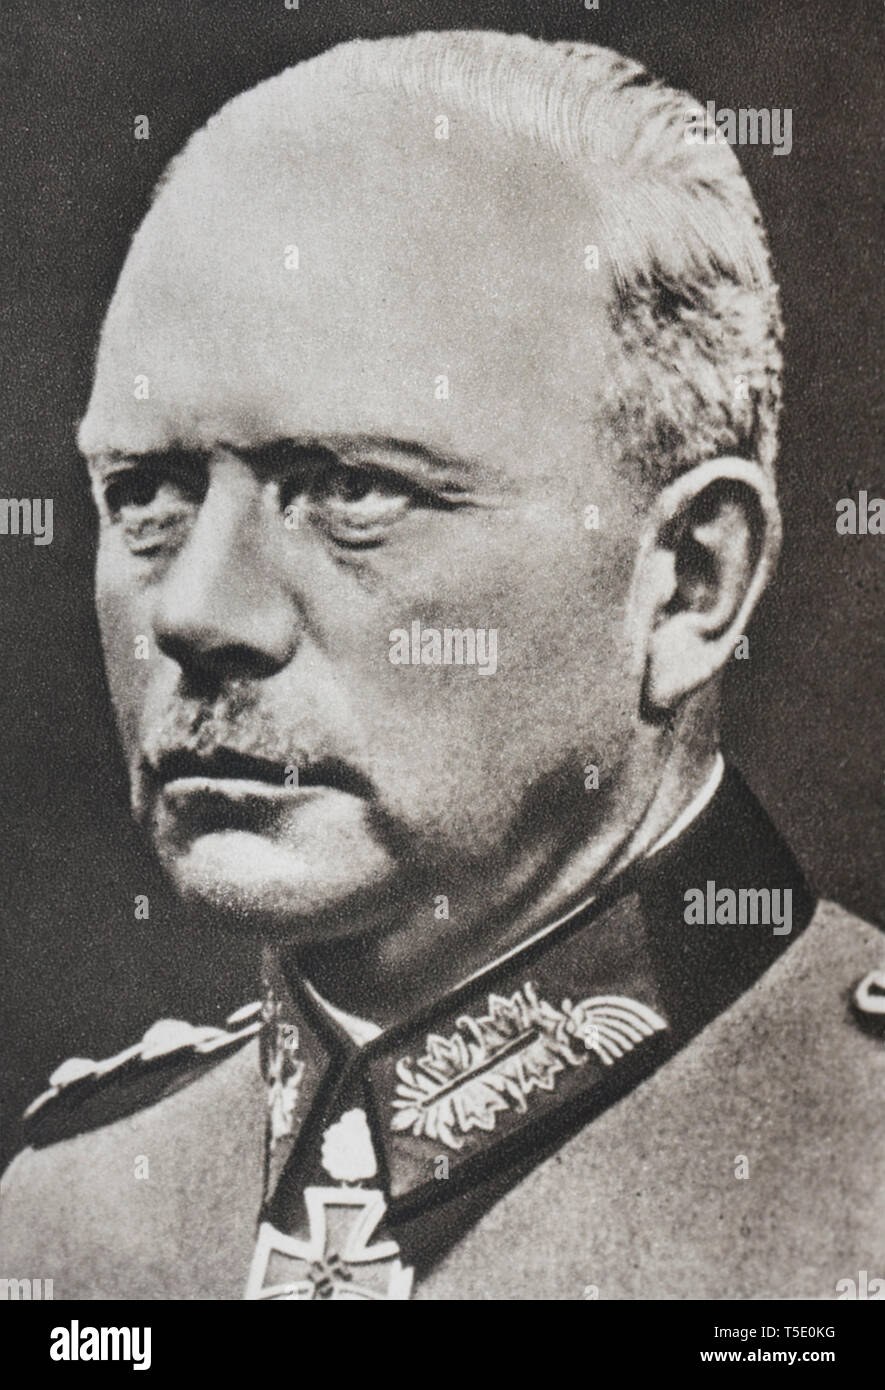 Ritratto del generale Heinz Wilhelm Guderian (1888 - 1954) era un tedesco generale durante il periodo nazista. Uno dei pionieri e sostenitore della guerra lampo Foto Stock